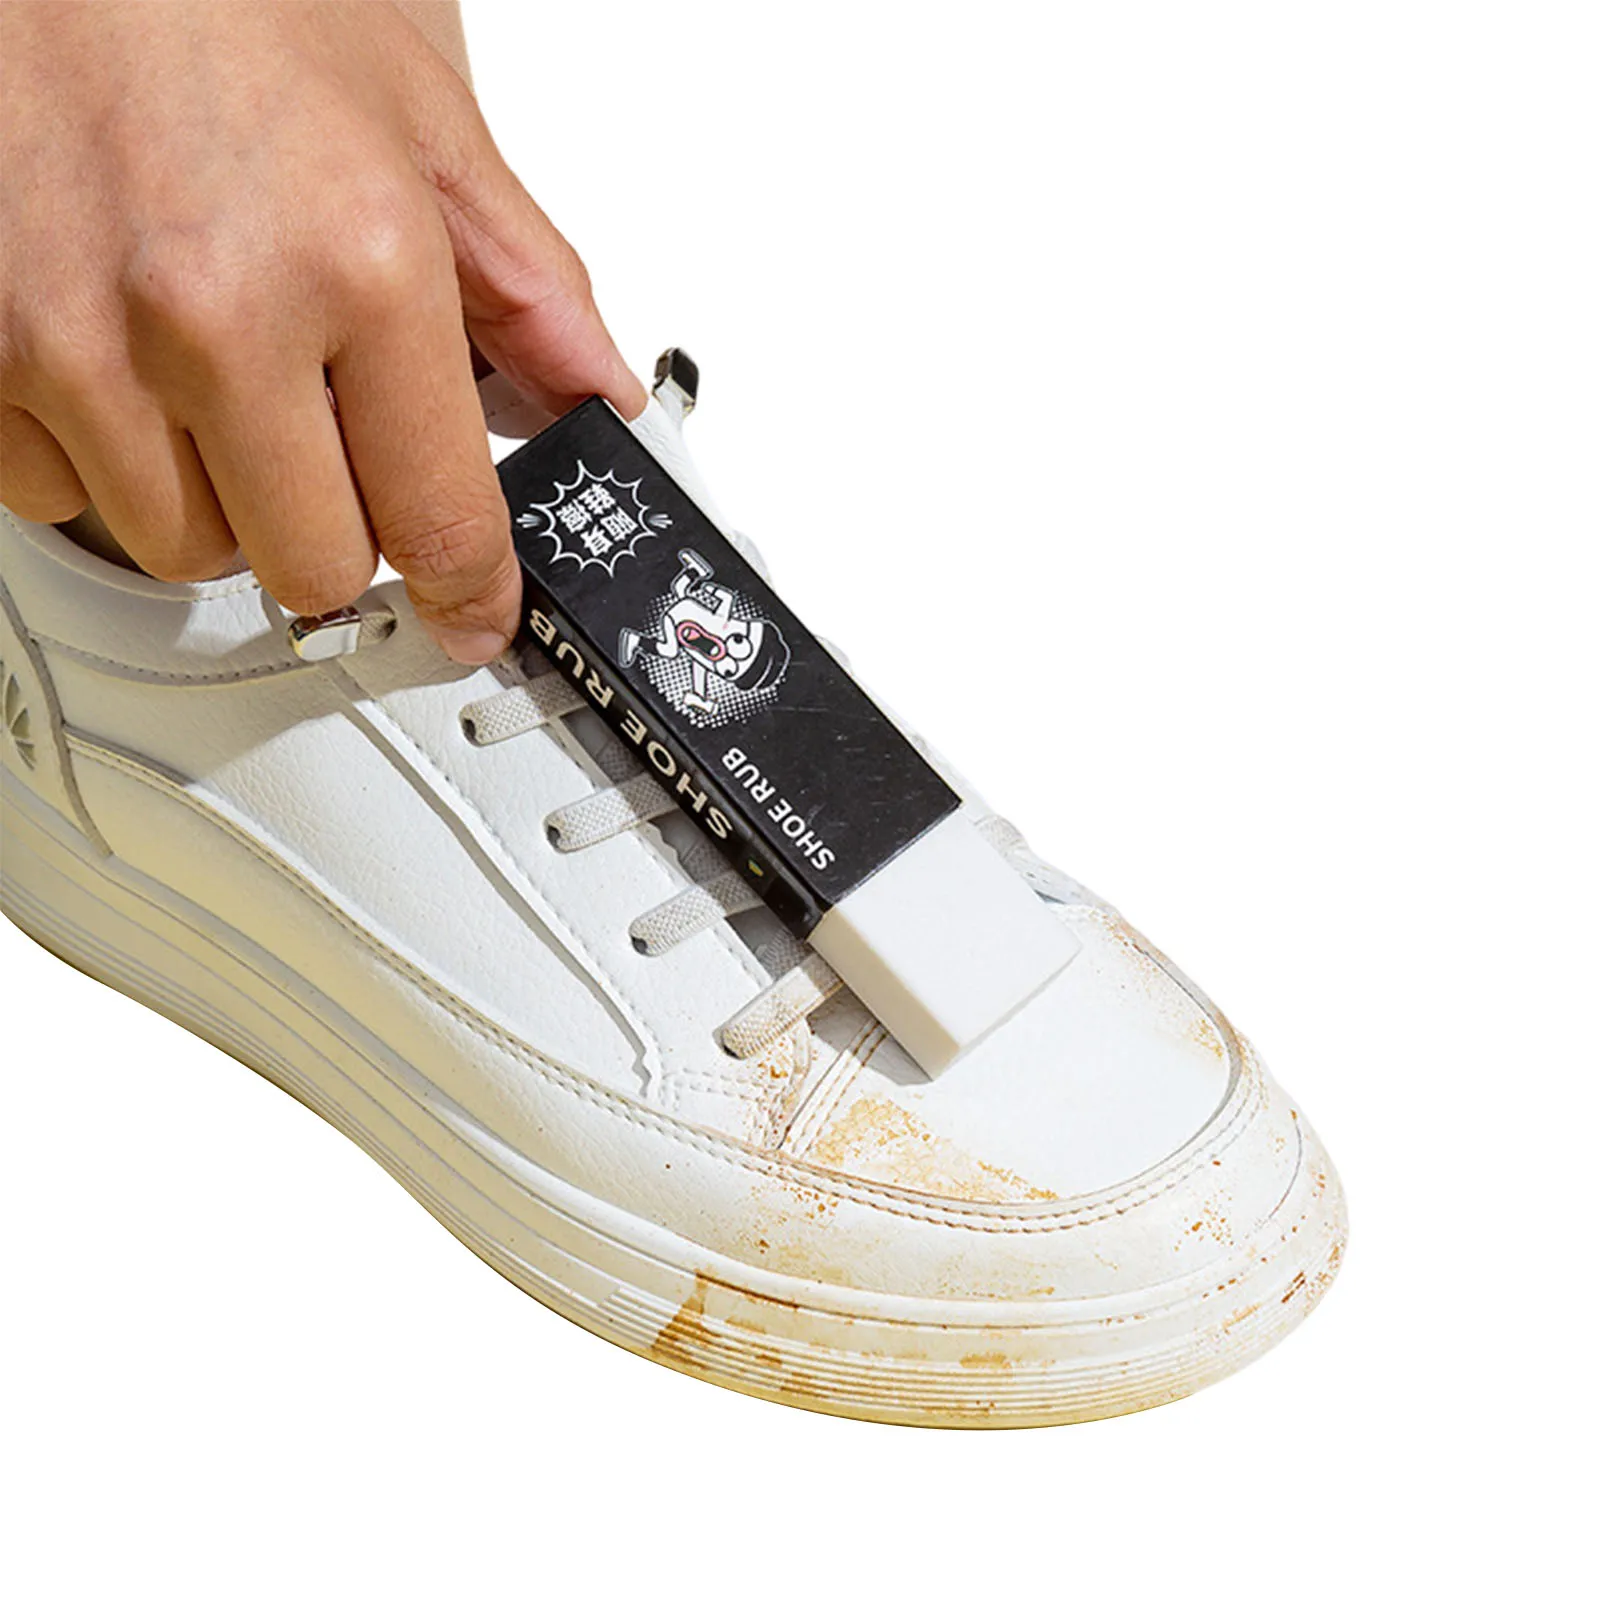 

Тканевый ластик для очистки кроссовок, очиститель обуви, ластик для очистки замши, овчины, матовой кожи и кожаной ткани, уход за обувью